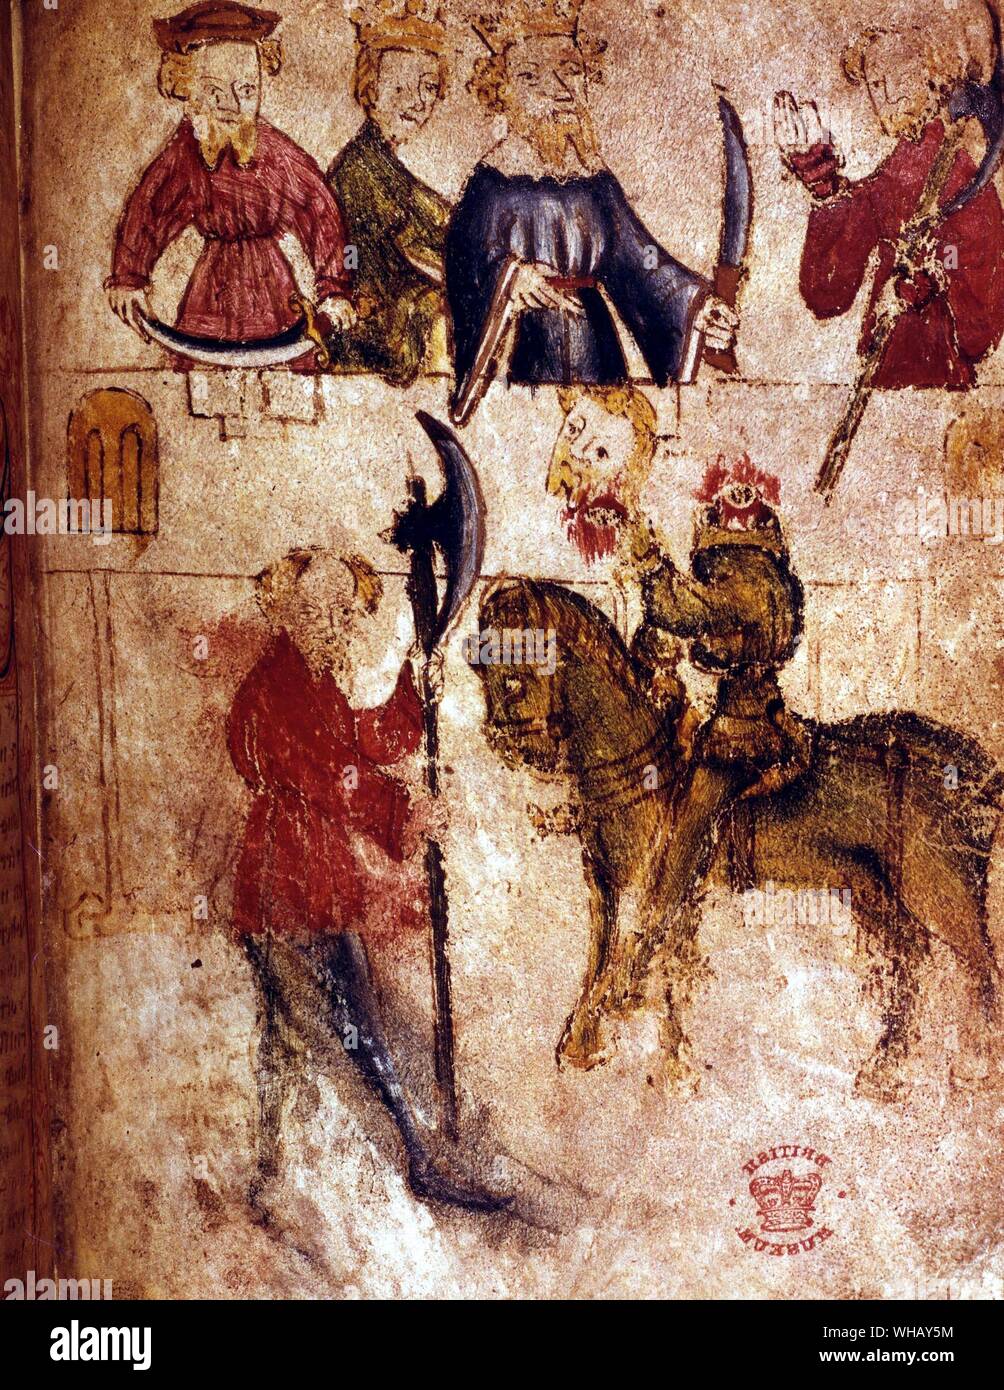 Sir Bertilak enthauptet von Sir Gawaine von Sir Gawaine und Der Grüne Ritter. King Arthur, Seite 128.. Sir Gawain und der Grüne Ritter ist ein Ende des 14. Jahrhunderts metrische Romanze. Der Kern der Geschichte ist die abgetrennten Kopf Thema, zentral in der keltischen Mythologie, aber auch durch die Ereignisse der Zeit, wie der schwarze Tod infuenced ist.. Stockfoto